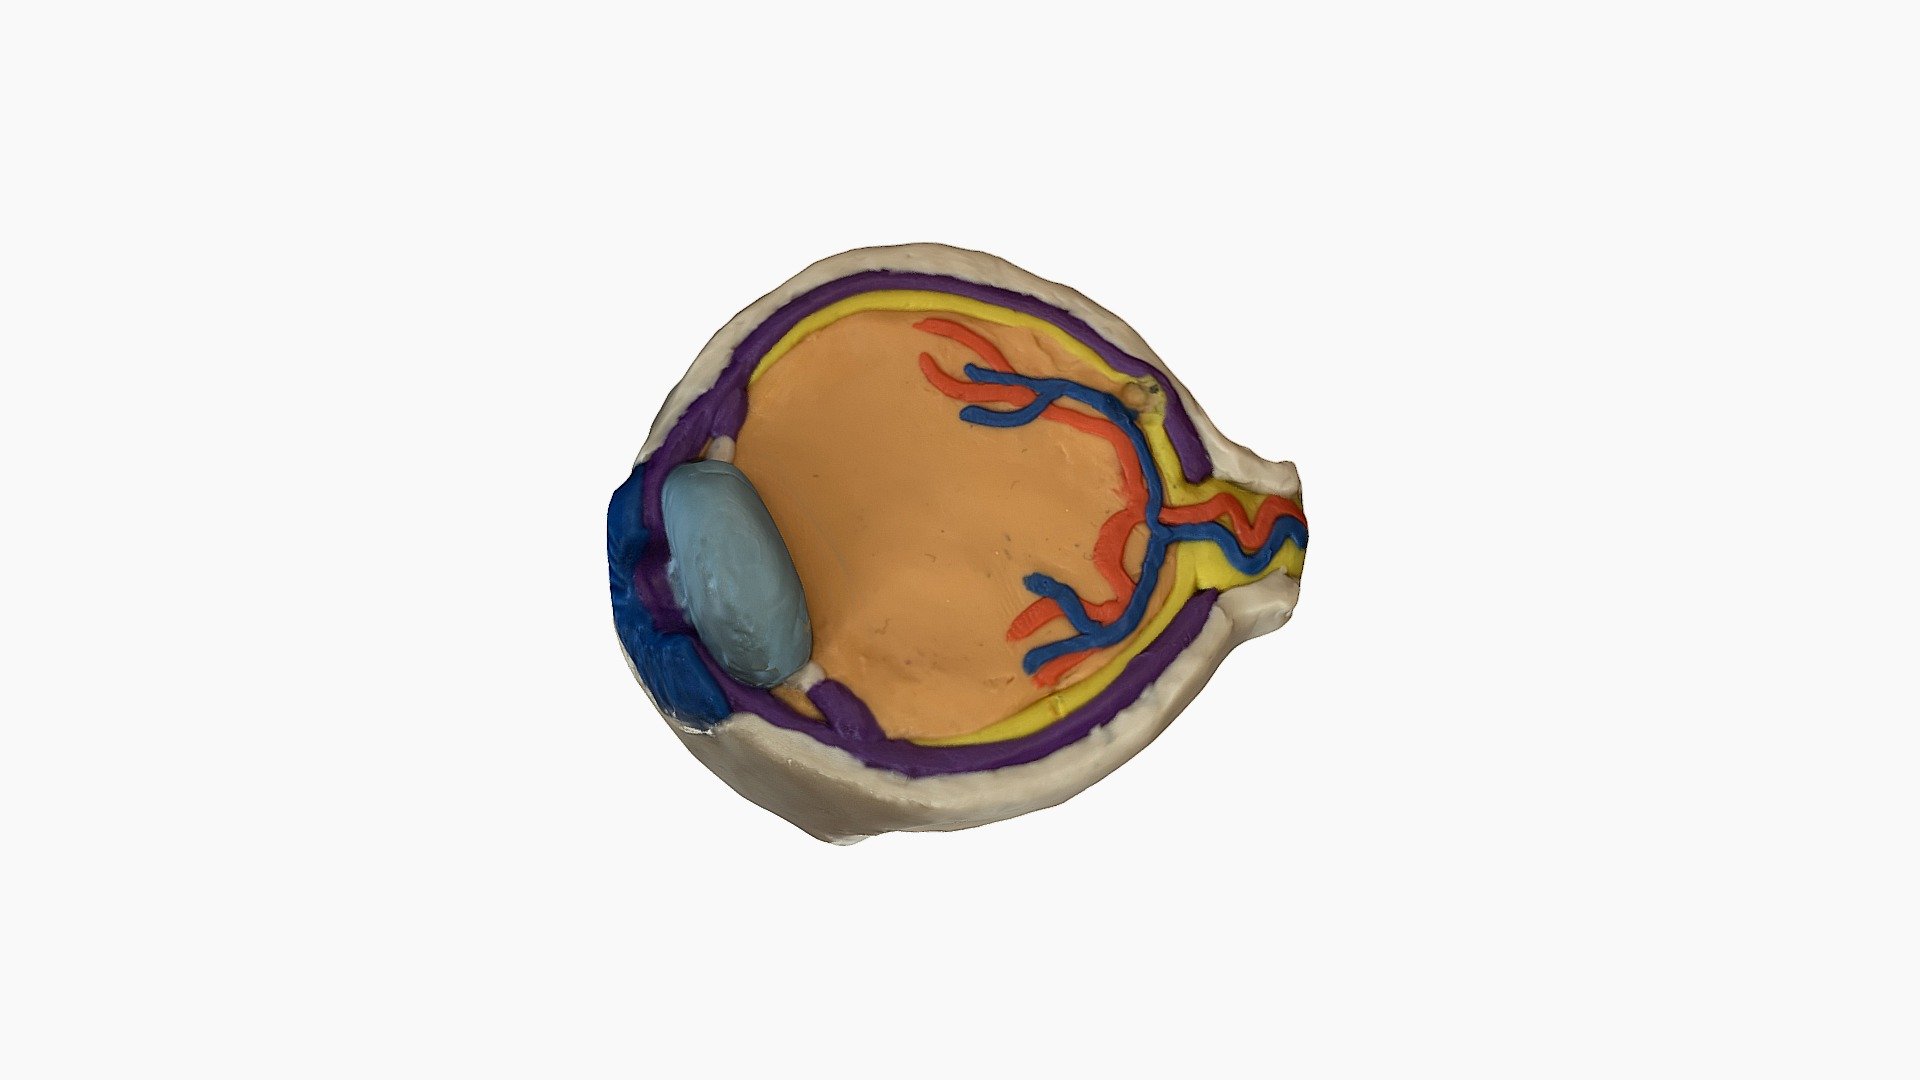 3D Model of the Eye